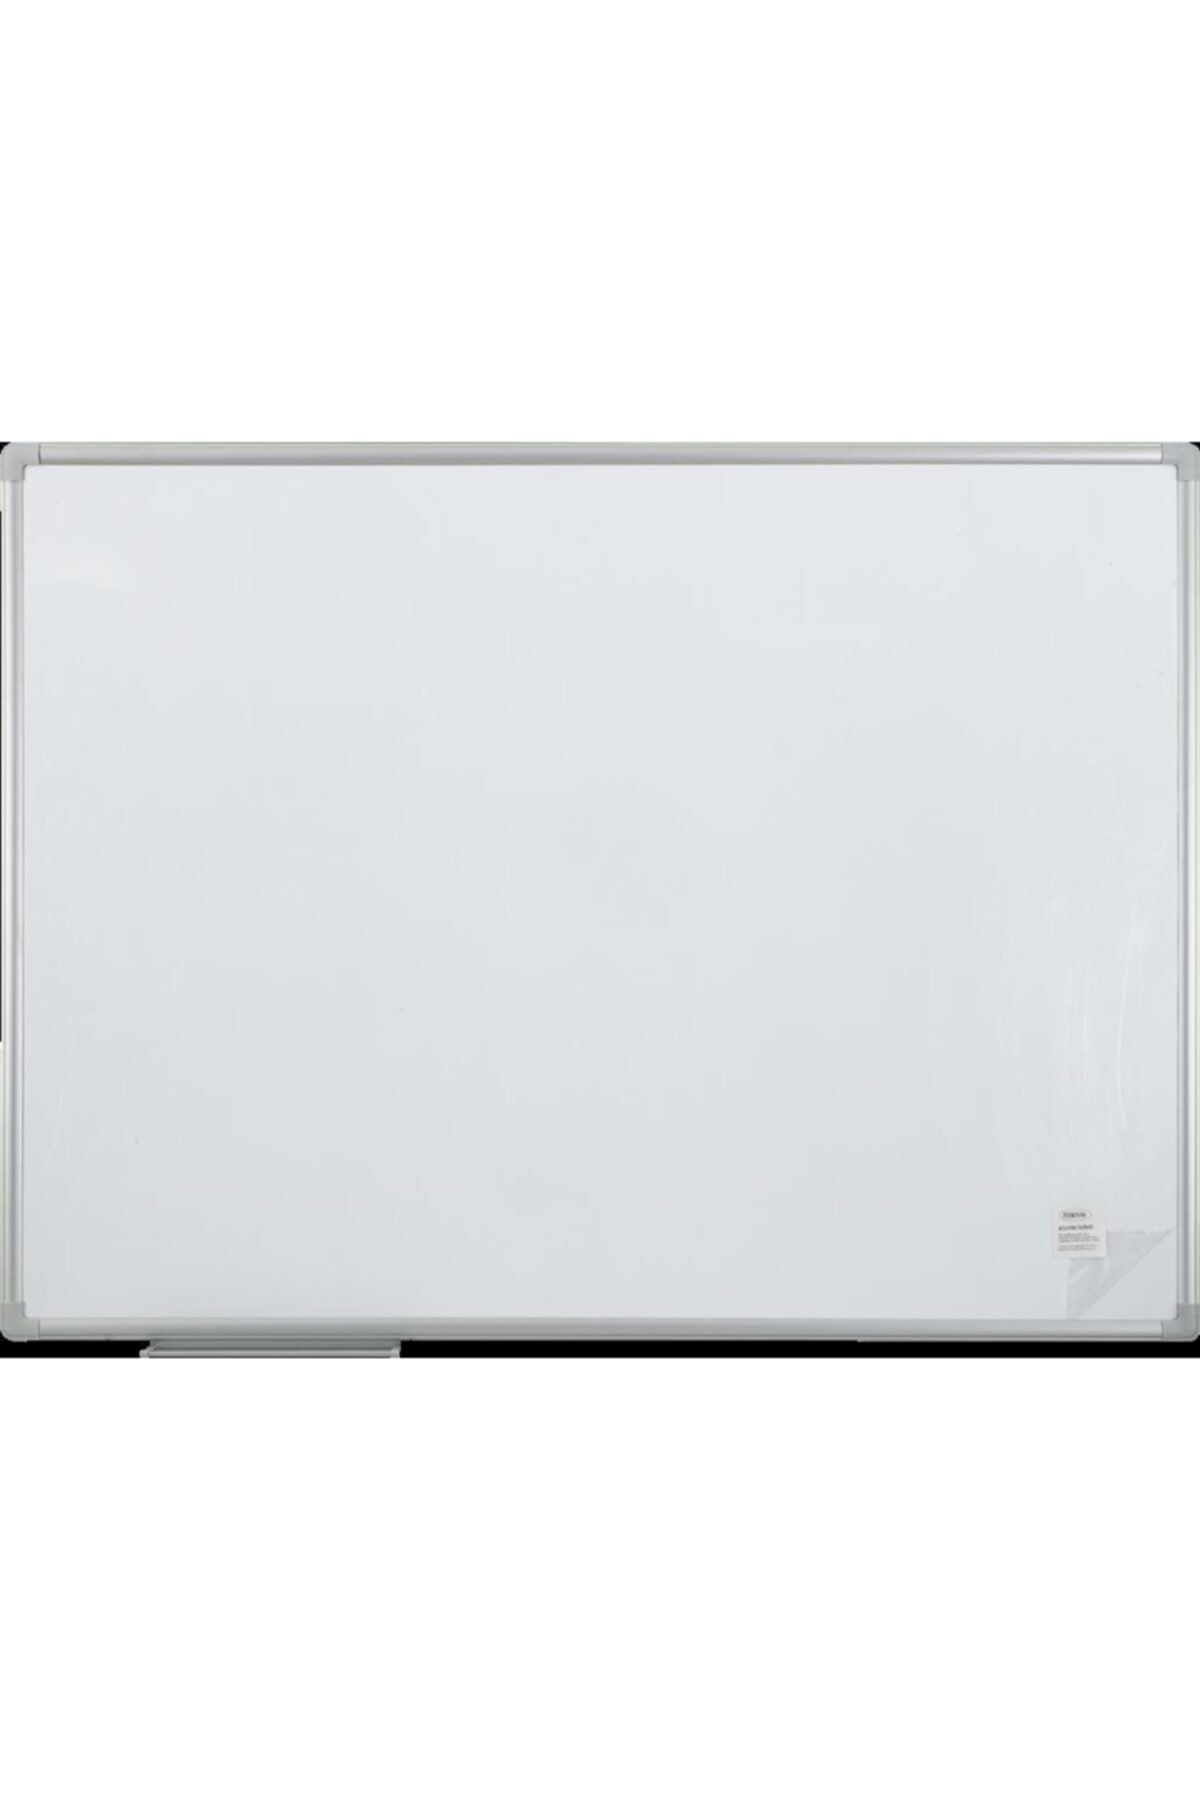 Noki Interpano Beyaz Int 600 Duvara Monte Manyetik Yüzey Metal Çerçeve Yazı Tahtası 45x60